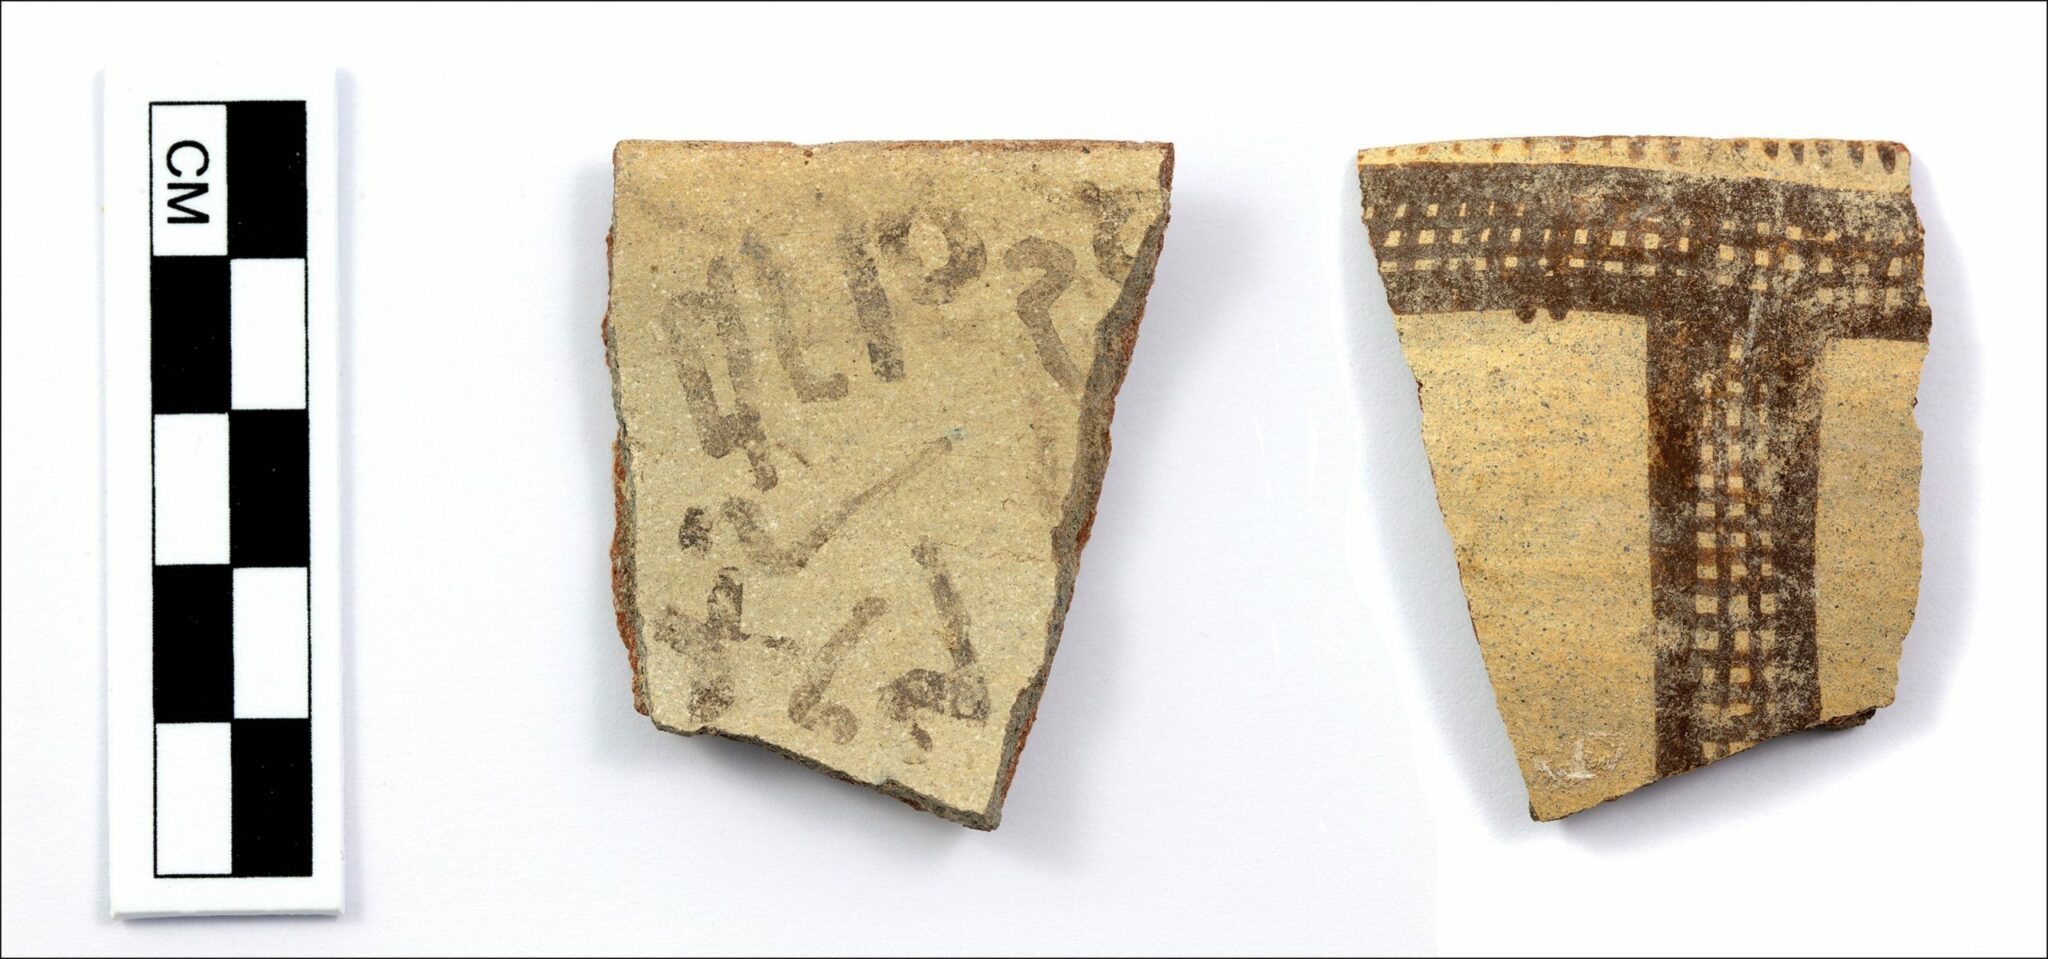 Археологи обнаружили «недостающее звено» в истории алфавитного письма